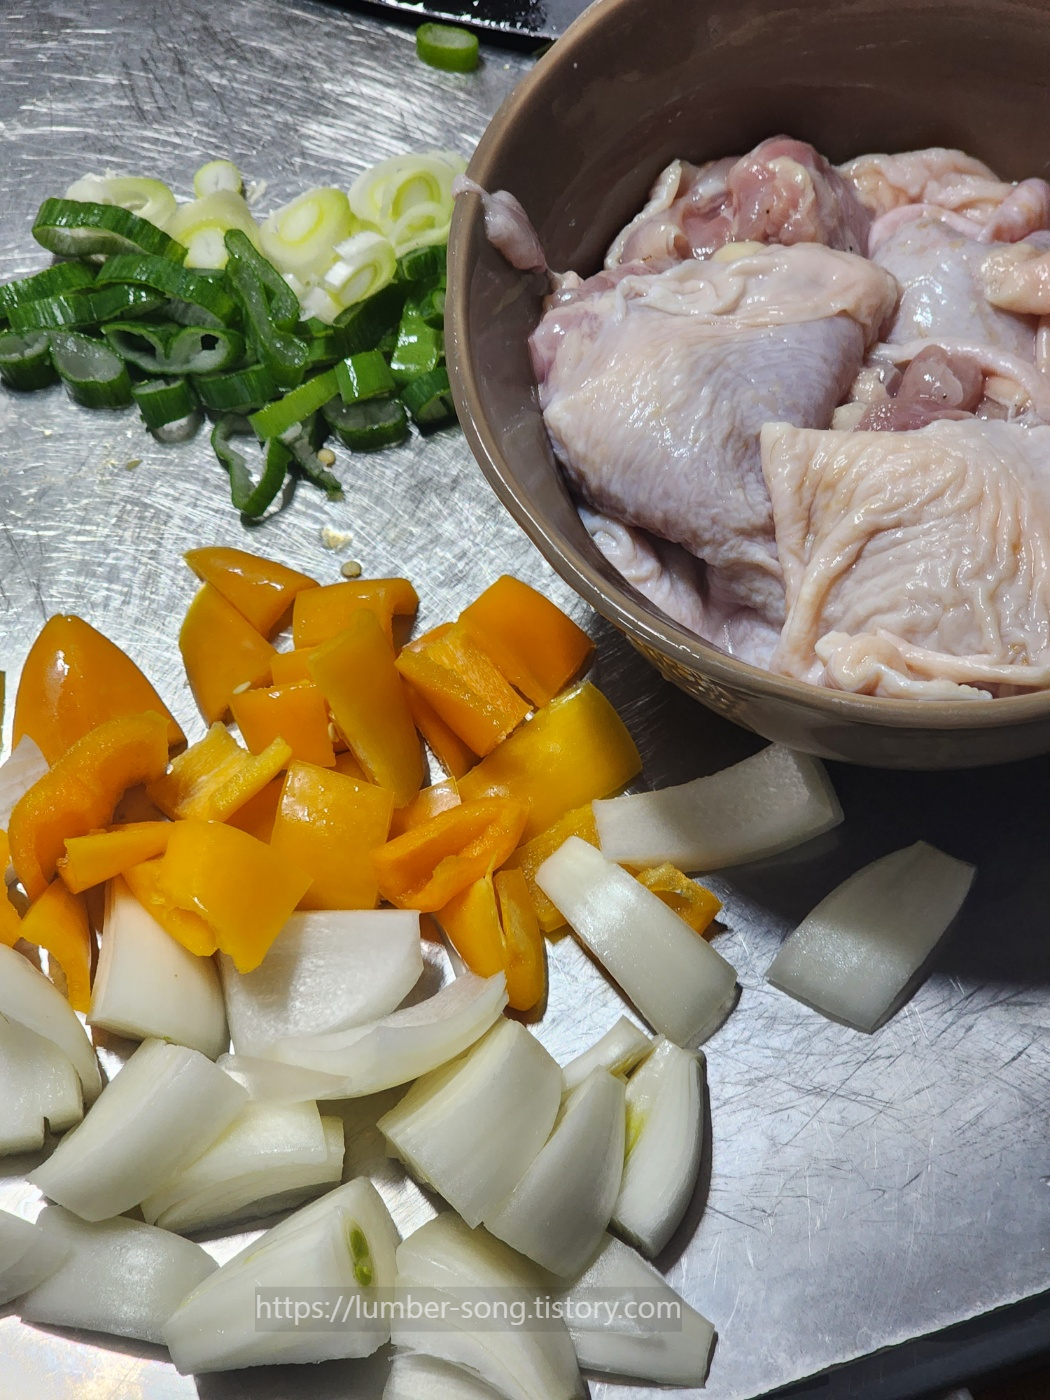 손질된 야채와 재워둔 닭을 깨끗이 씻어둔 사진이다.